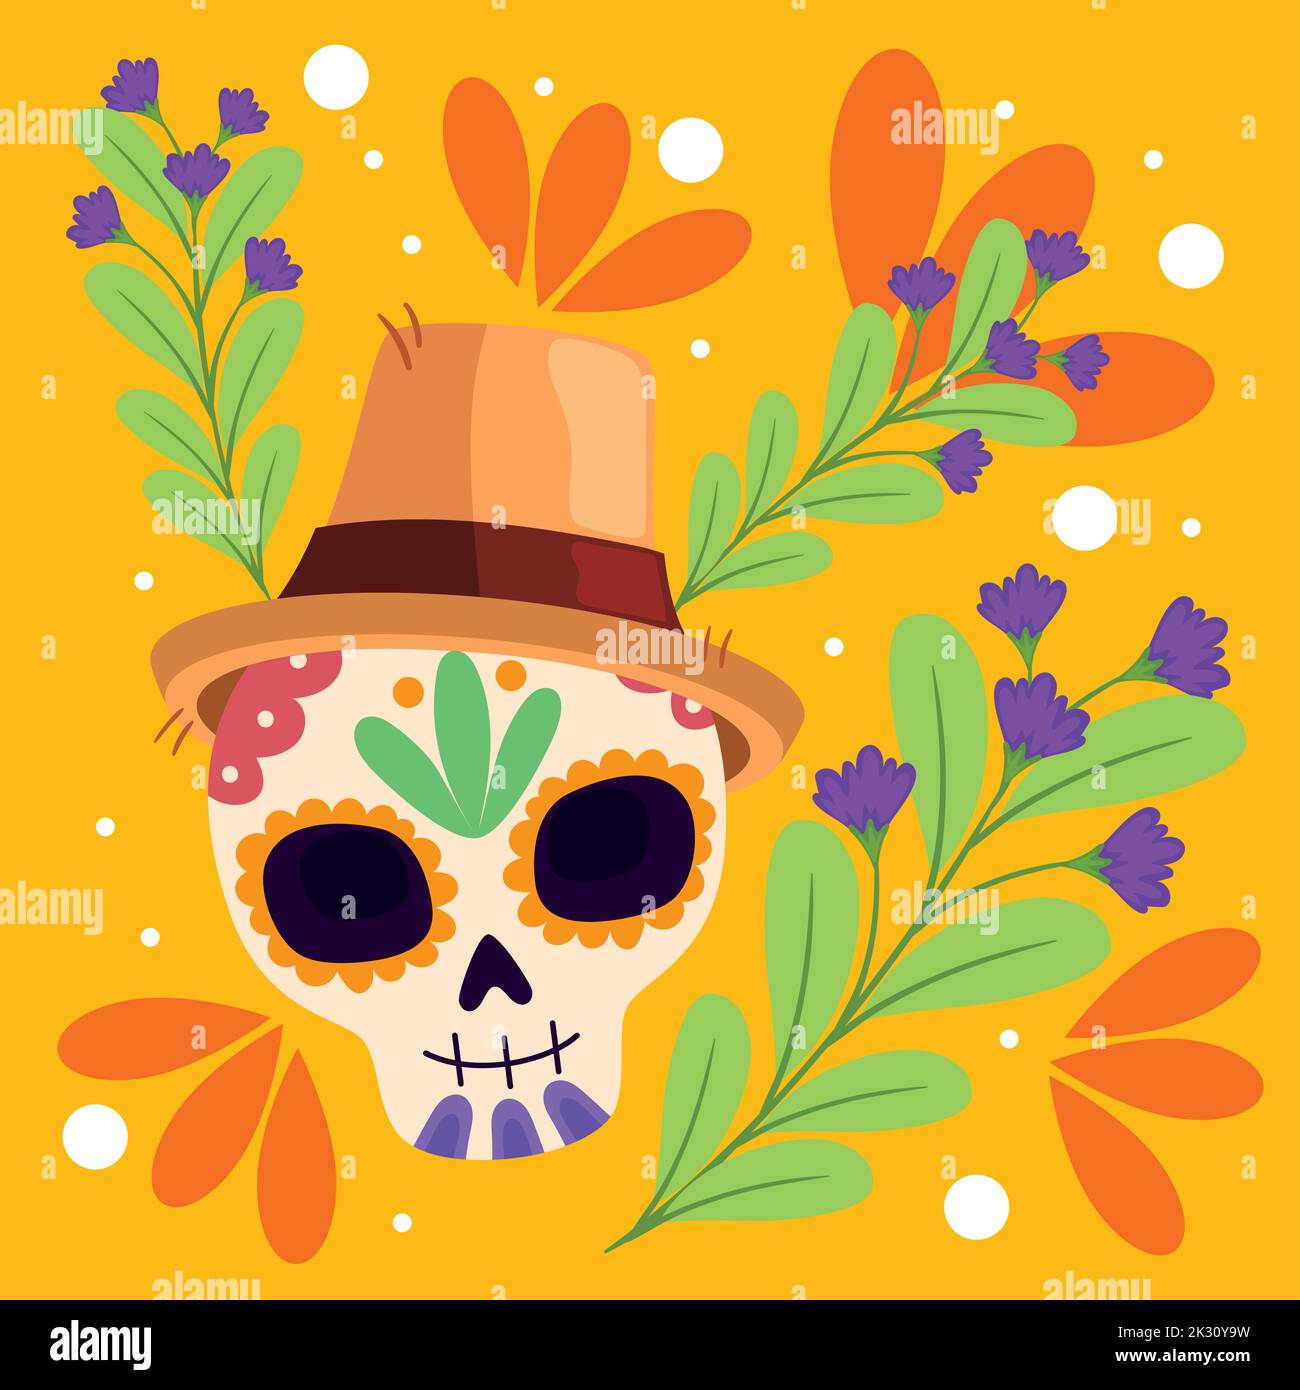 dia de los muertos skull with branches poster Stock Vector